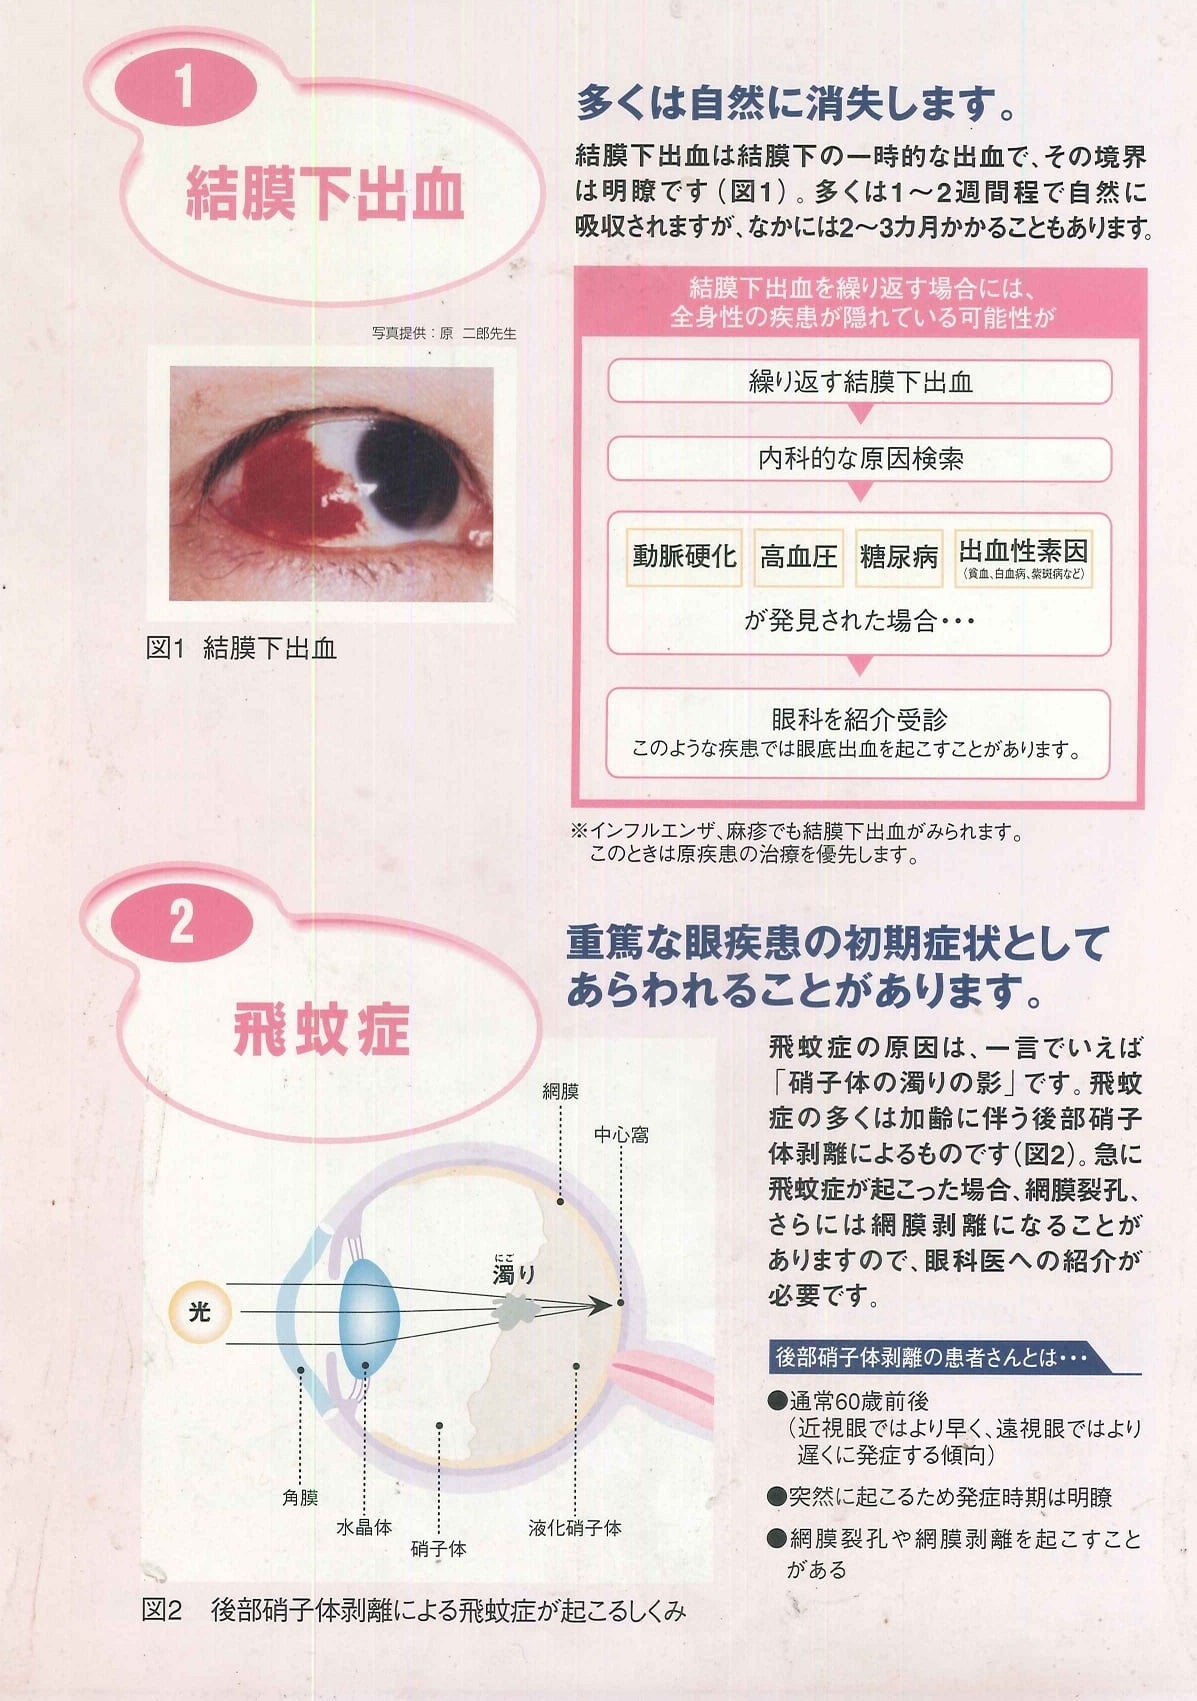 の 出血 原因 白目 左右の白目が真っ赤になる結膜下出血、何度も起こり心配：朝日新聞デジタル